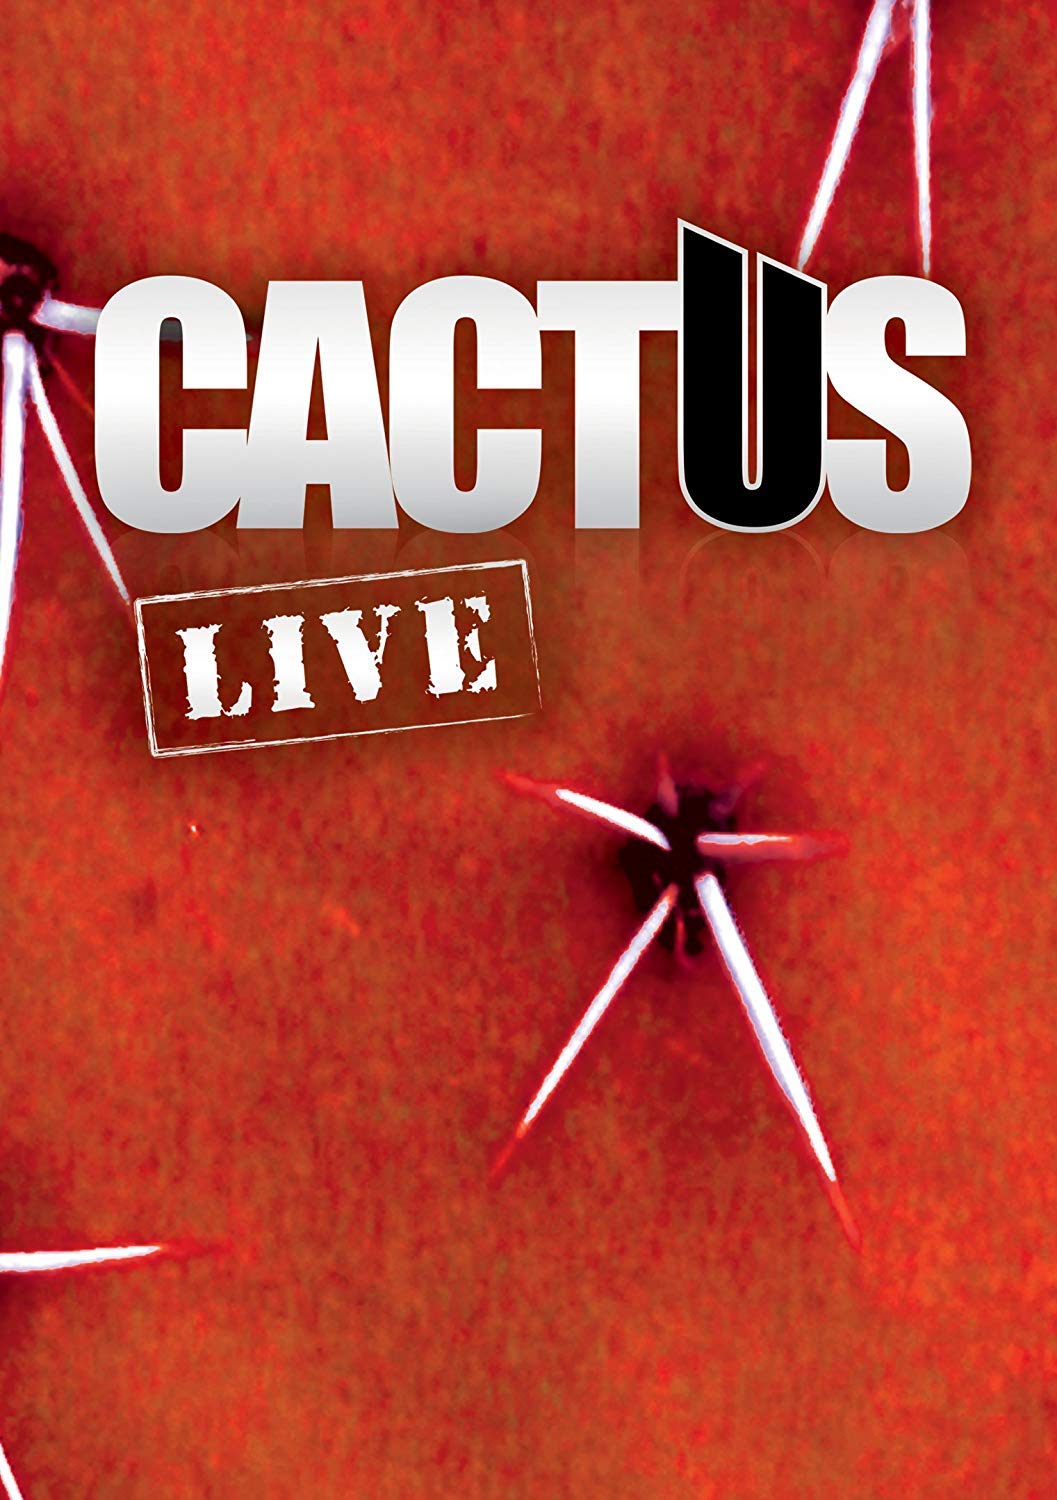 Cactus - Live